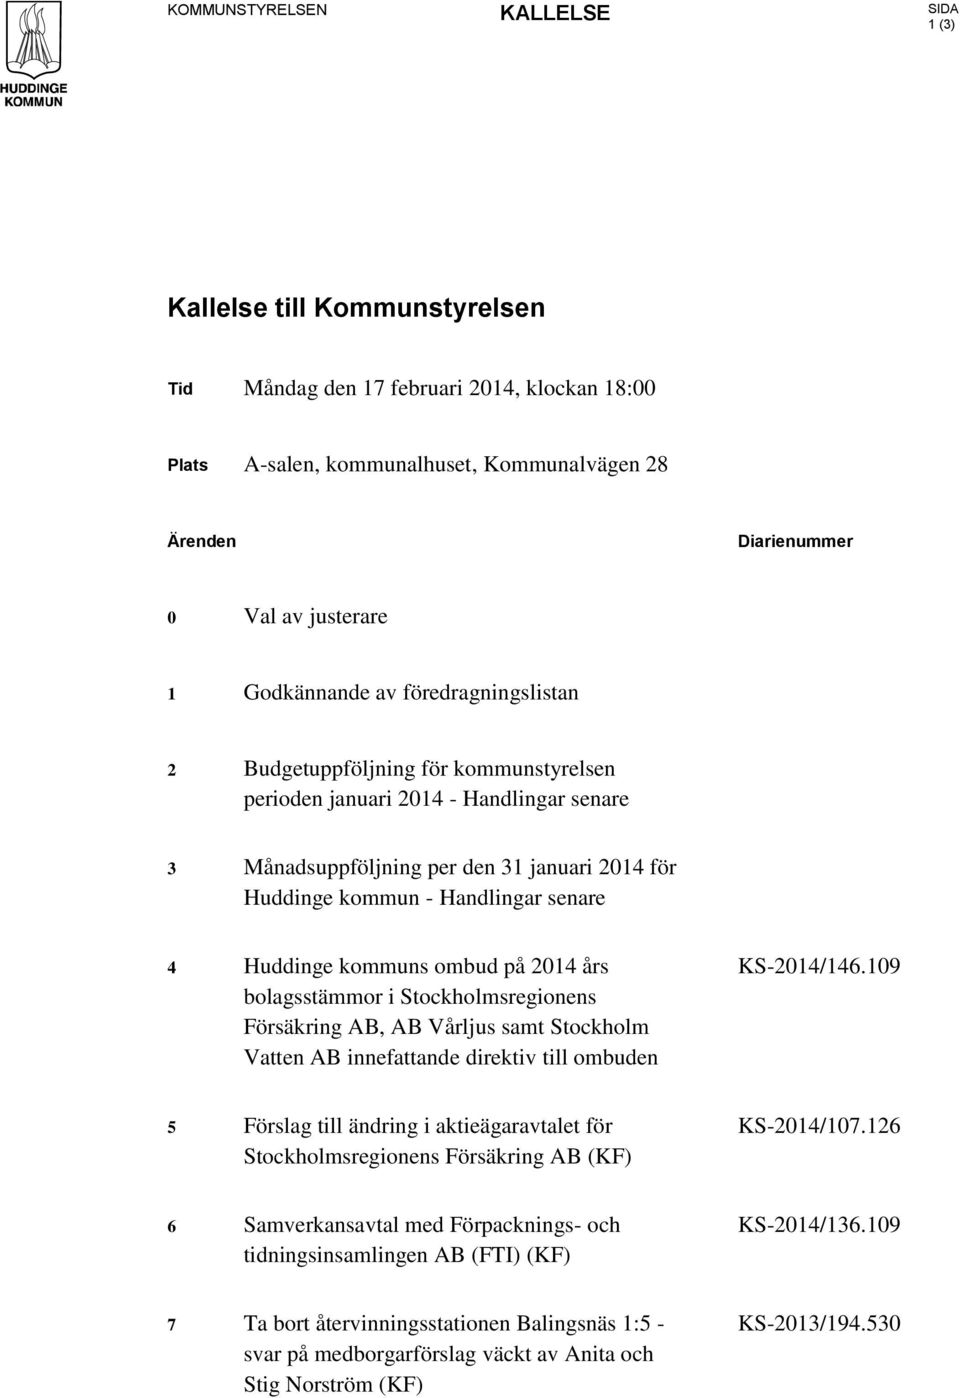 senare 4 Huddinge kommuns ombud på 2014 års bolagsstämmor i Stockholmsregionens Försäkring AB, AB Vårljus samt Stockholm Vatten AB innefattande direktiv till ombuden KS-2014/146.